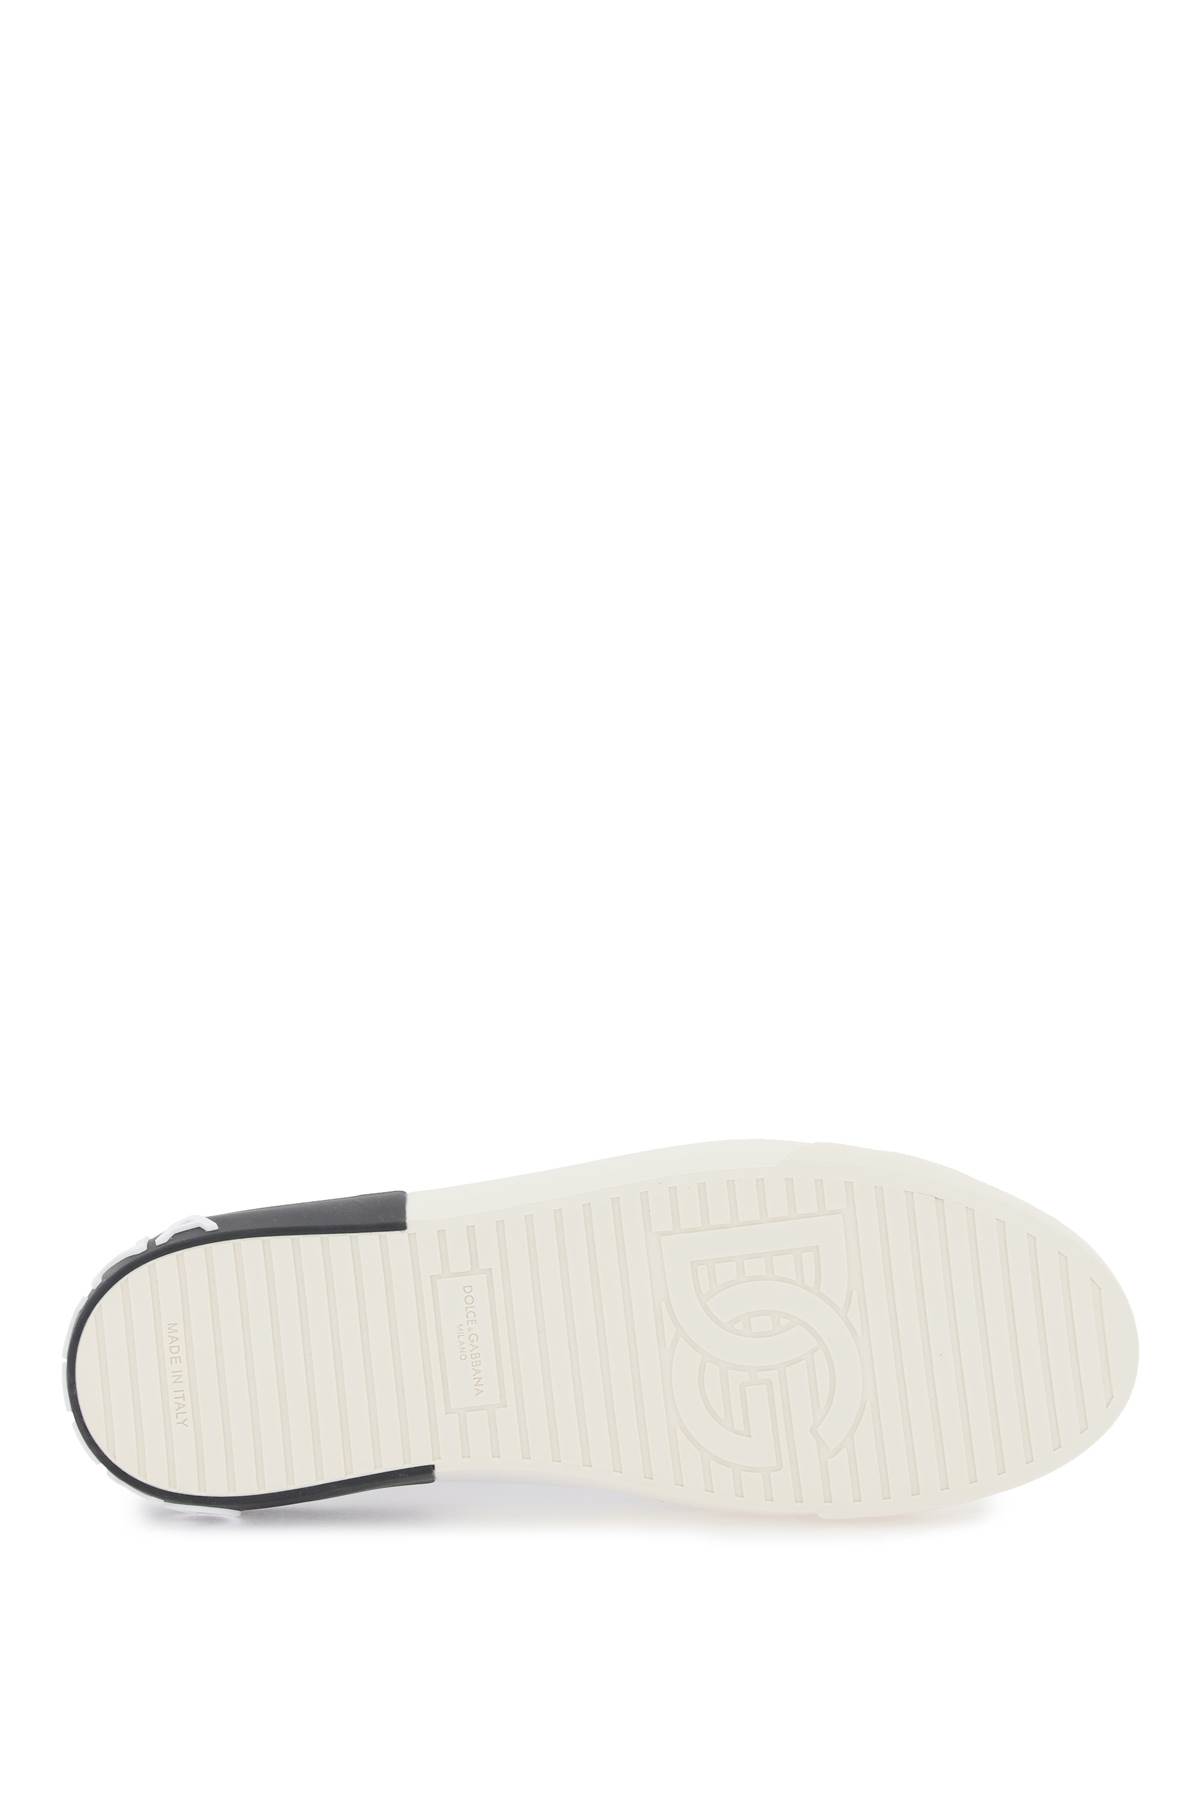 Shop Dolce & Gabbana Portofino Nappa Leather Sneakers In Bianco/nero